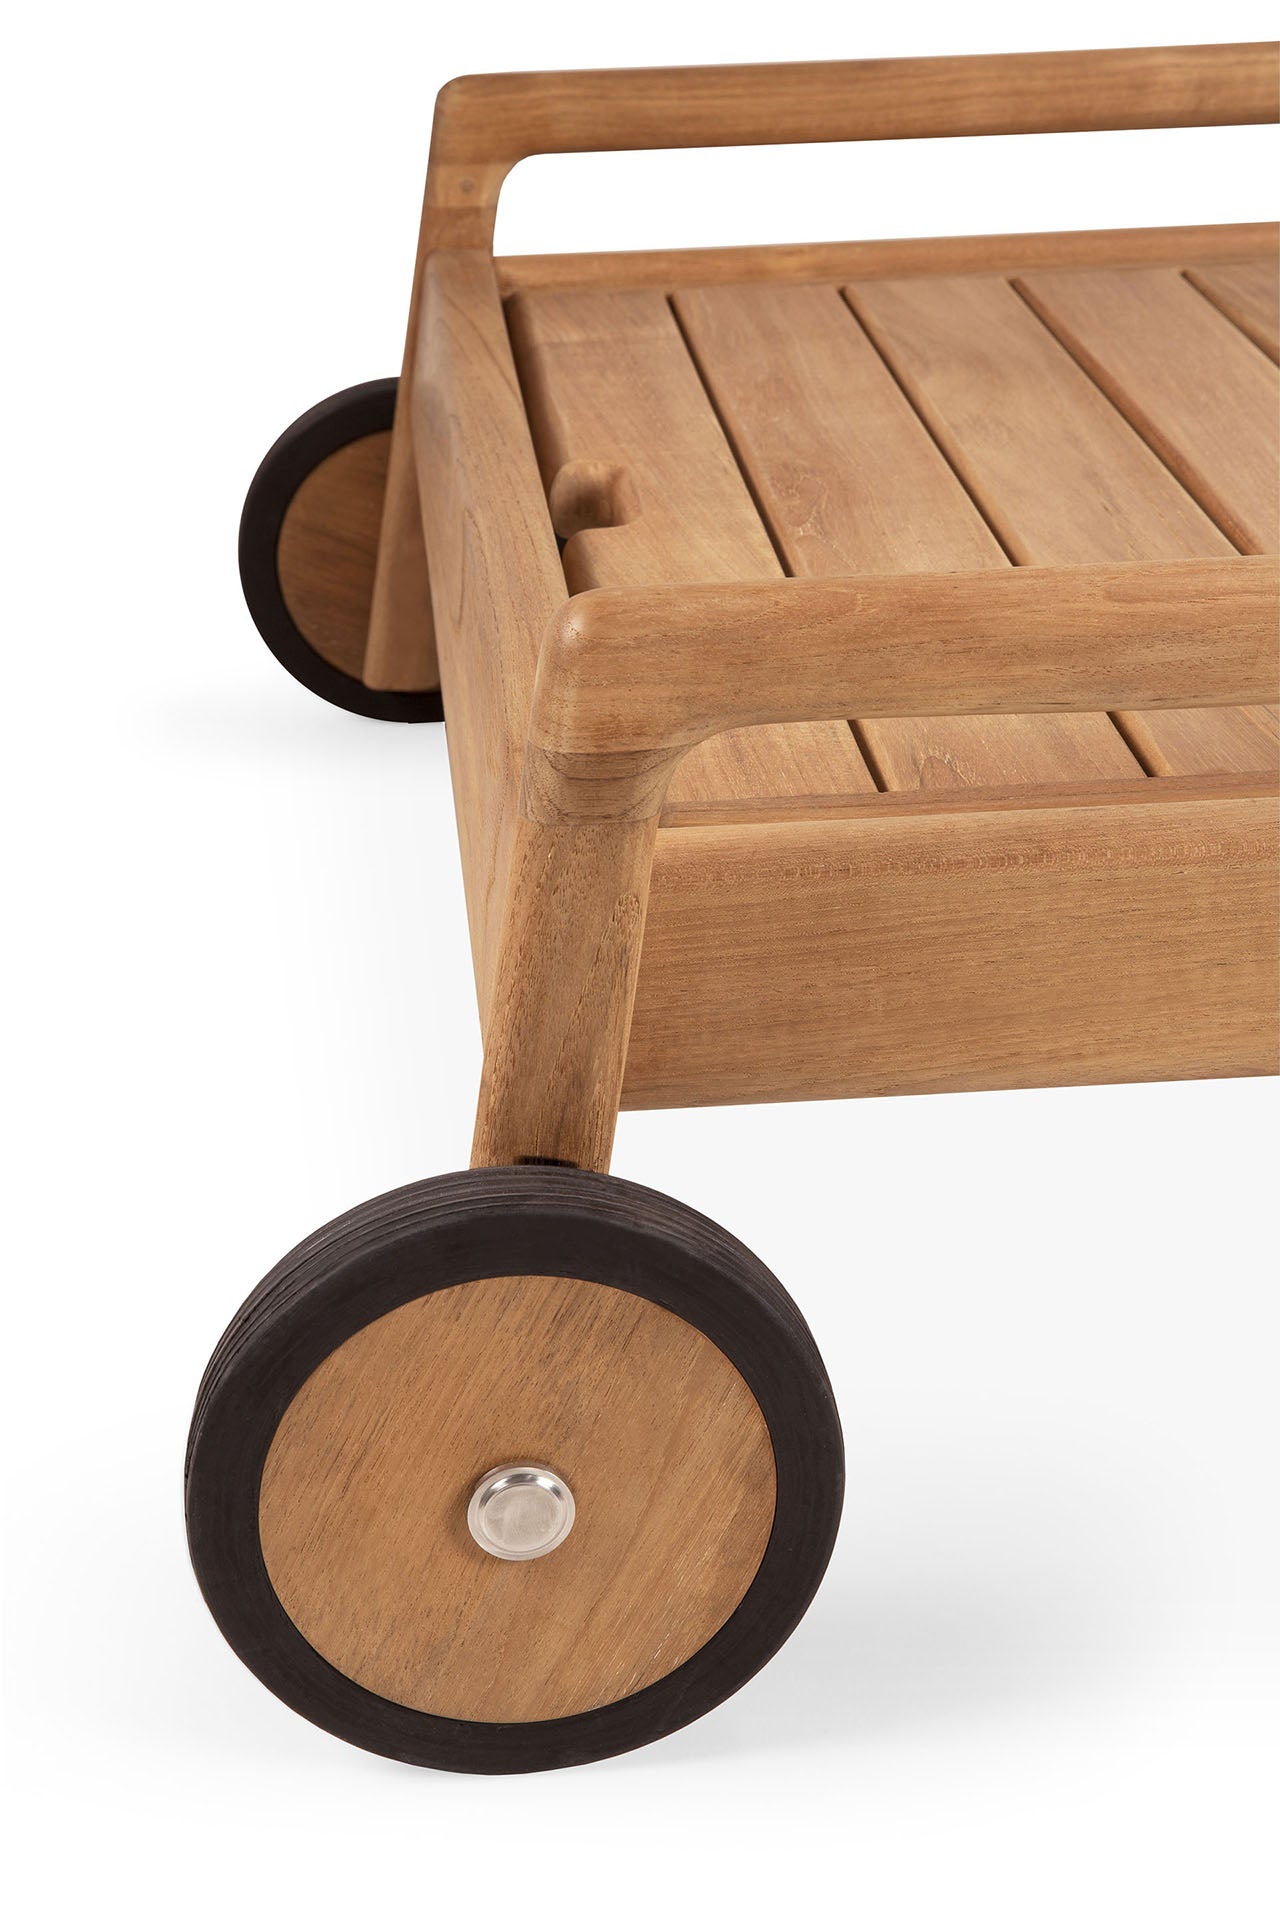 比利時原裝進口實木傢俬 - 戶外系列 - Jack系列柚木可調節躺椅